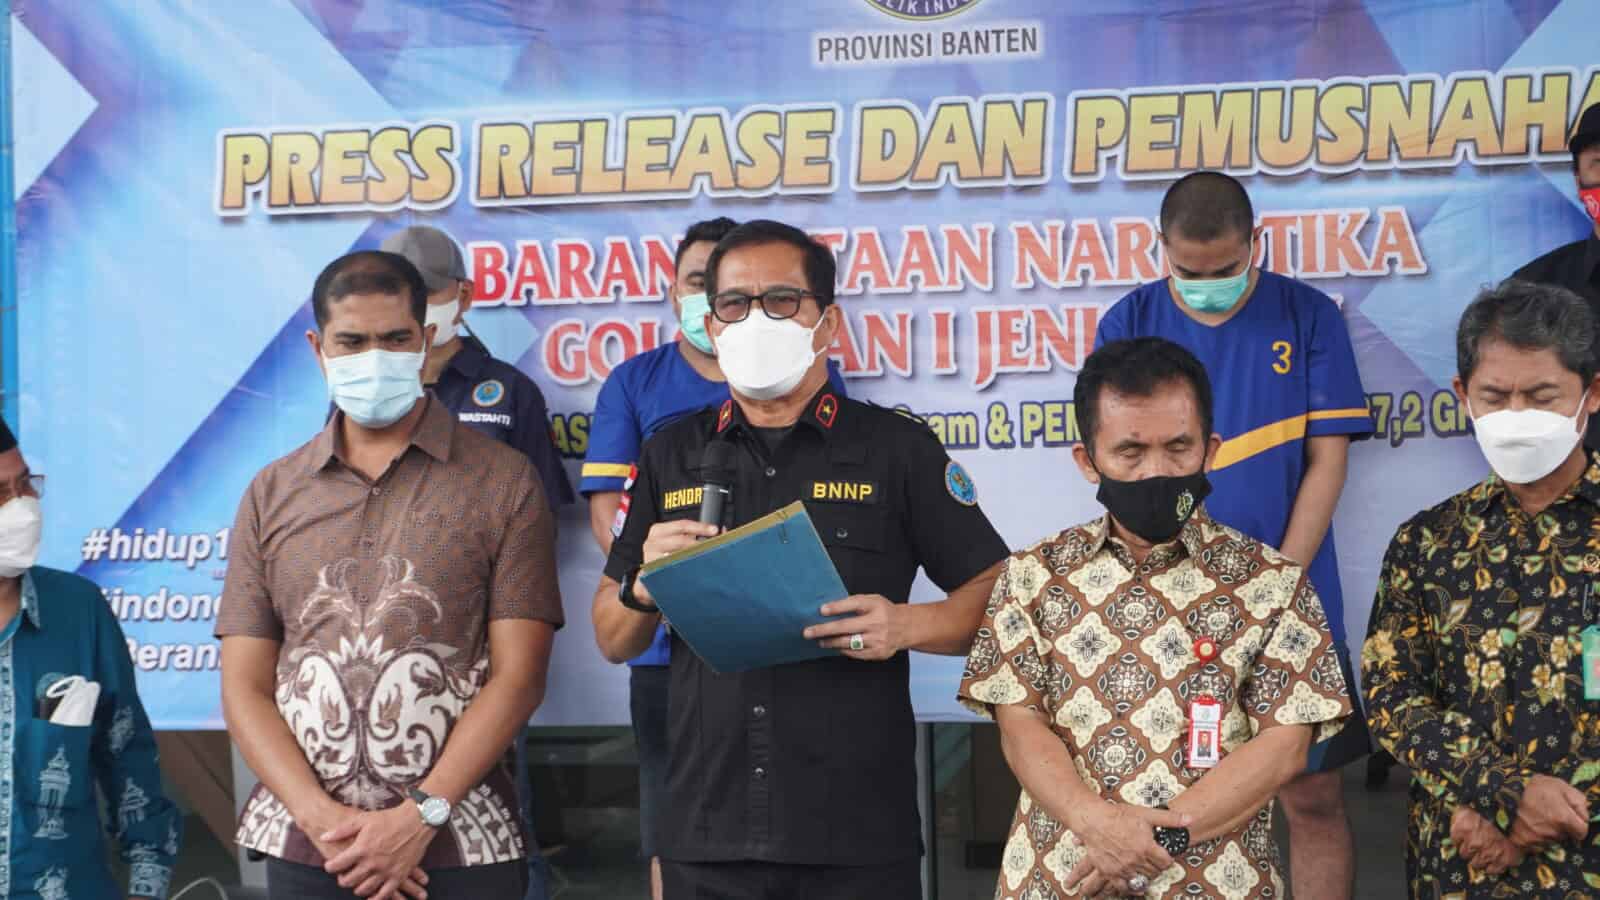 BNNP Banten Selamatkan 7000 Lebih Generasi Bangsa Lewat Pemusnahan Sabu